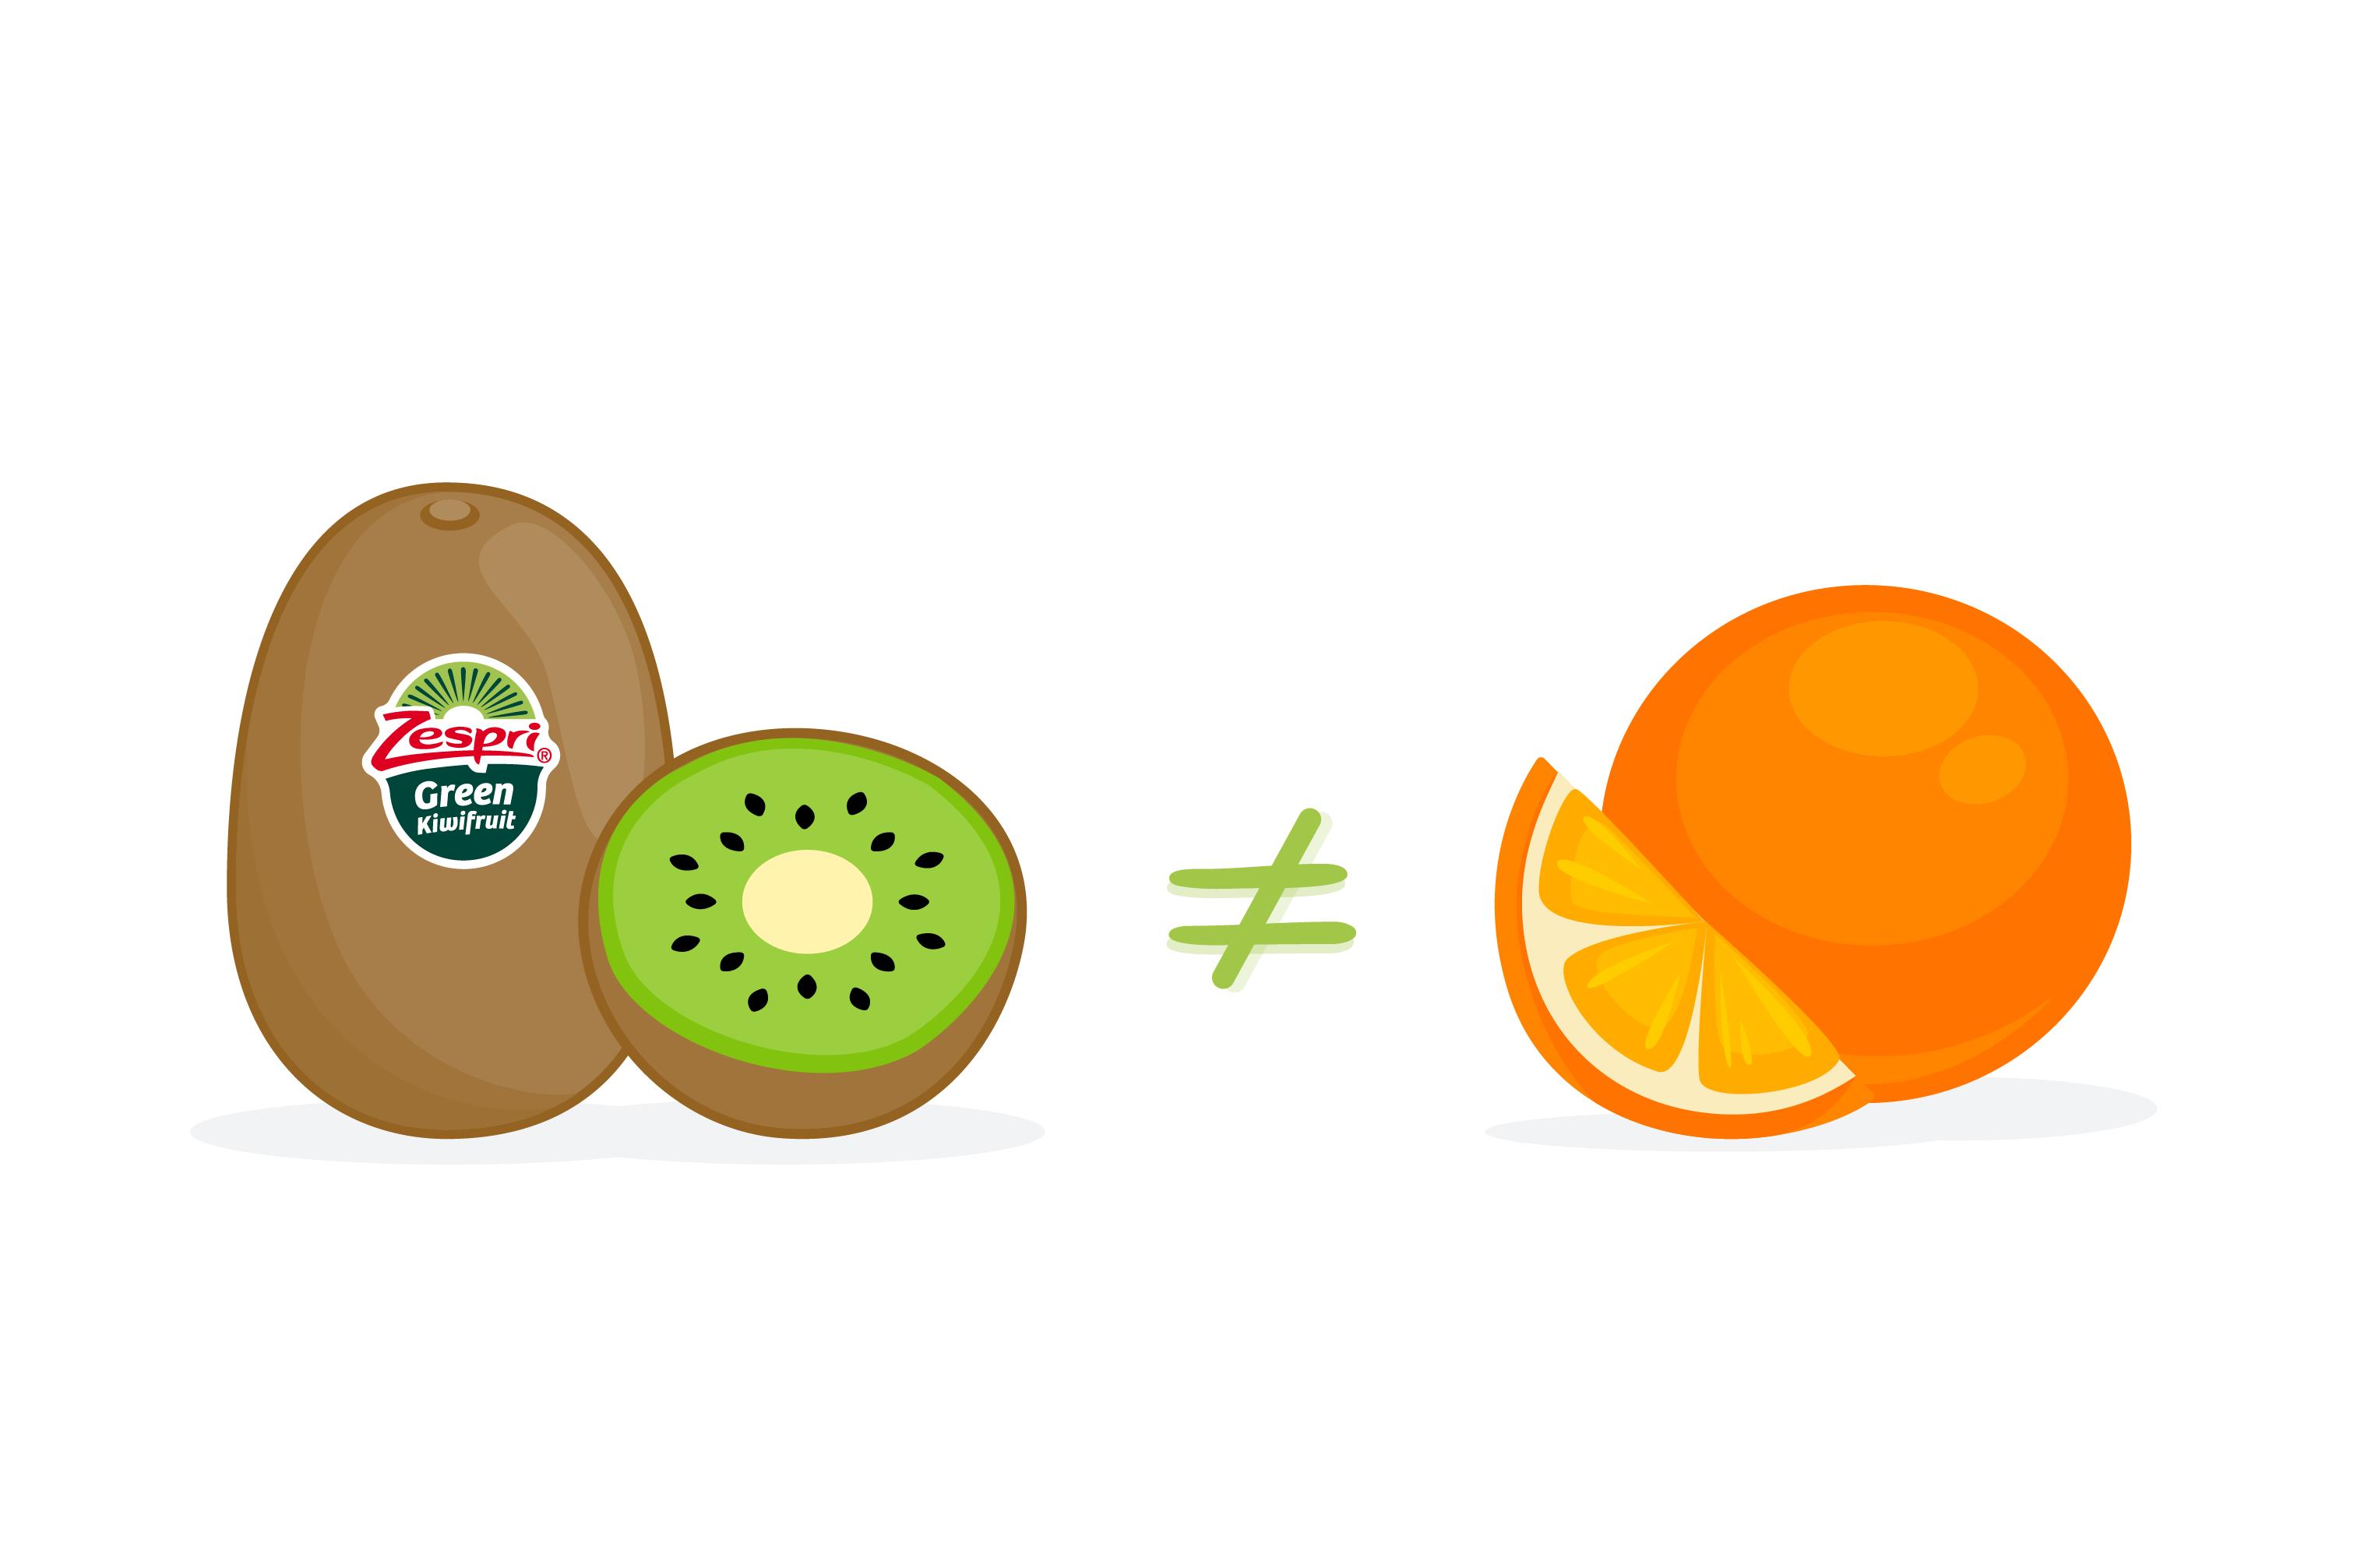 Is Kiwi a Citrus Fruit?